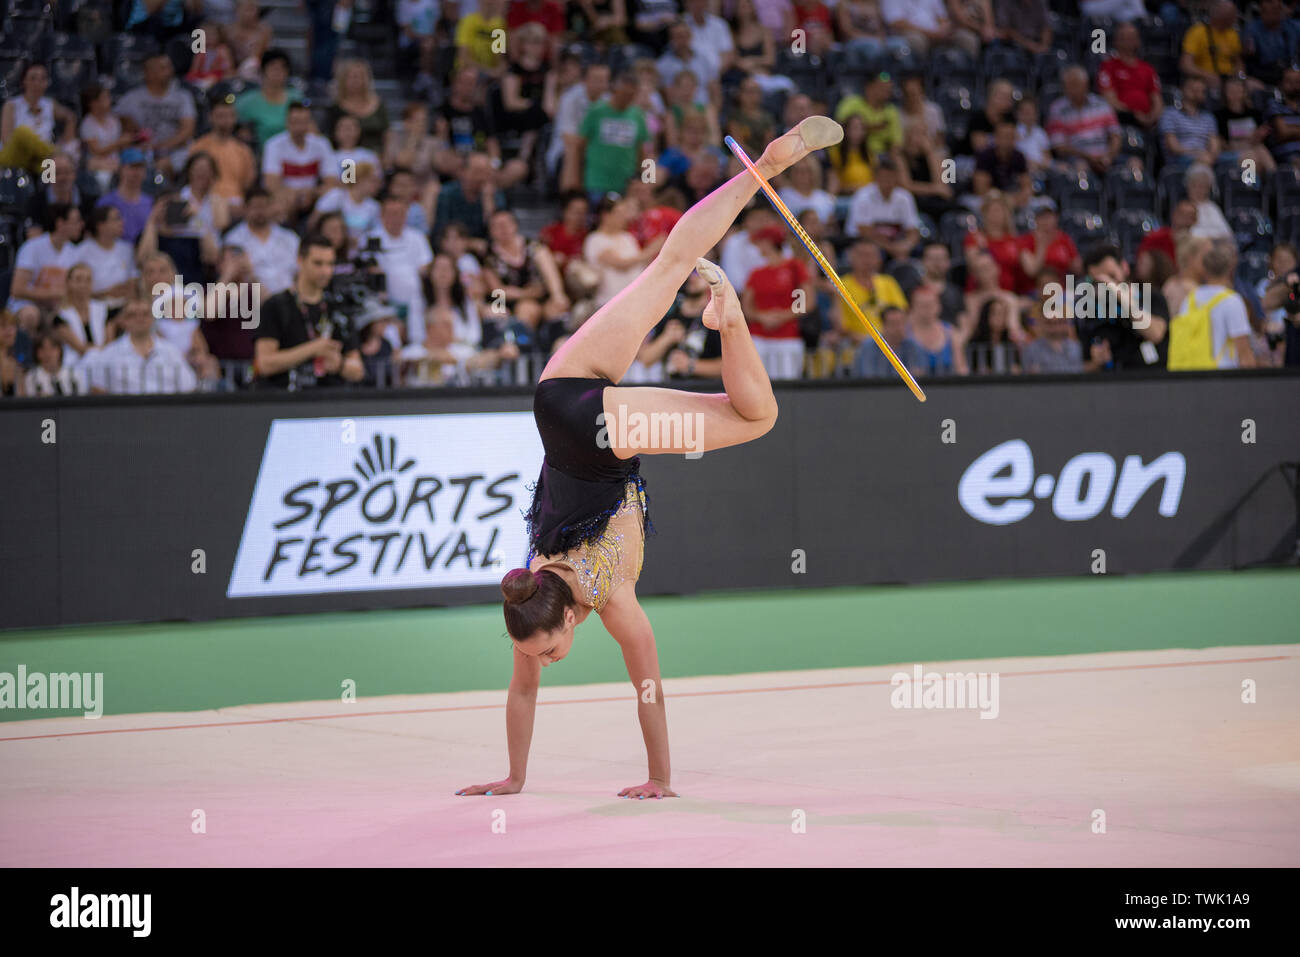 Gymnast girl ribbon Imágenes recortadas de stock - Alamy